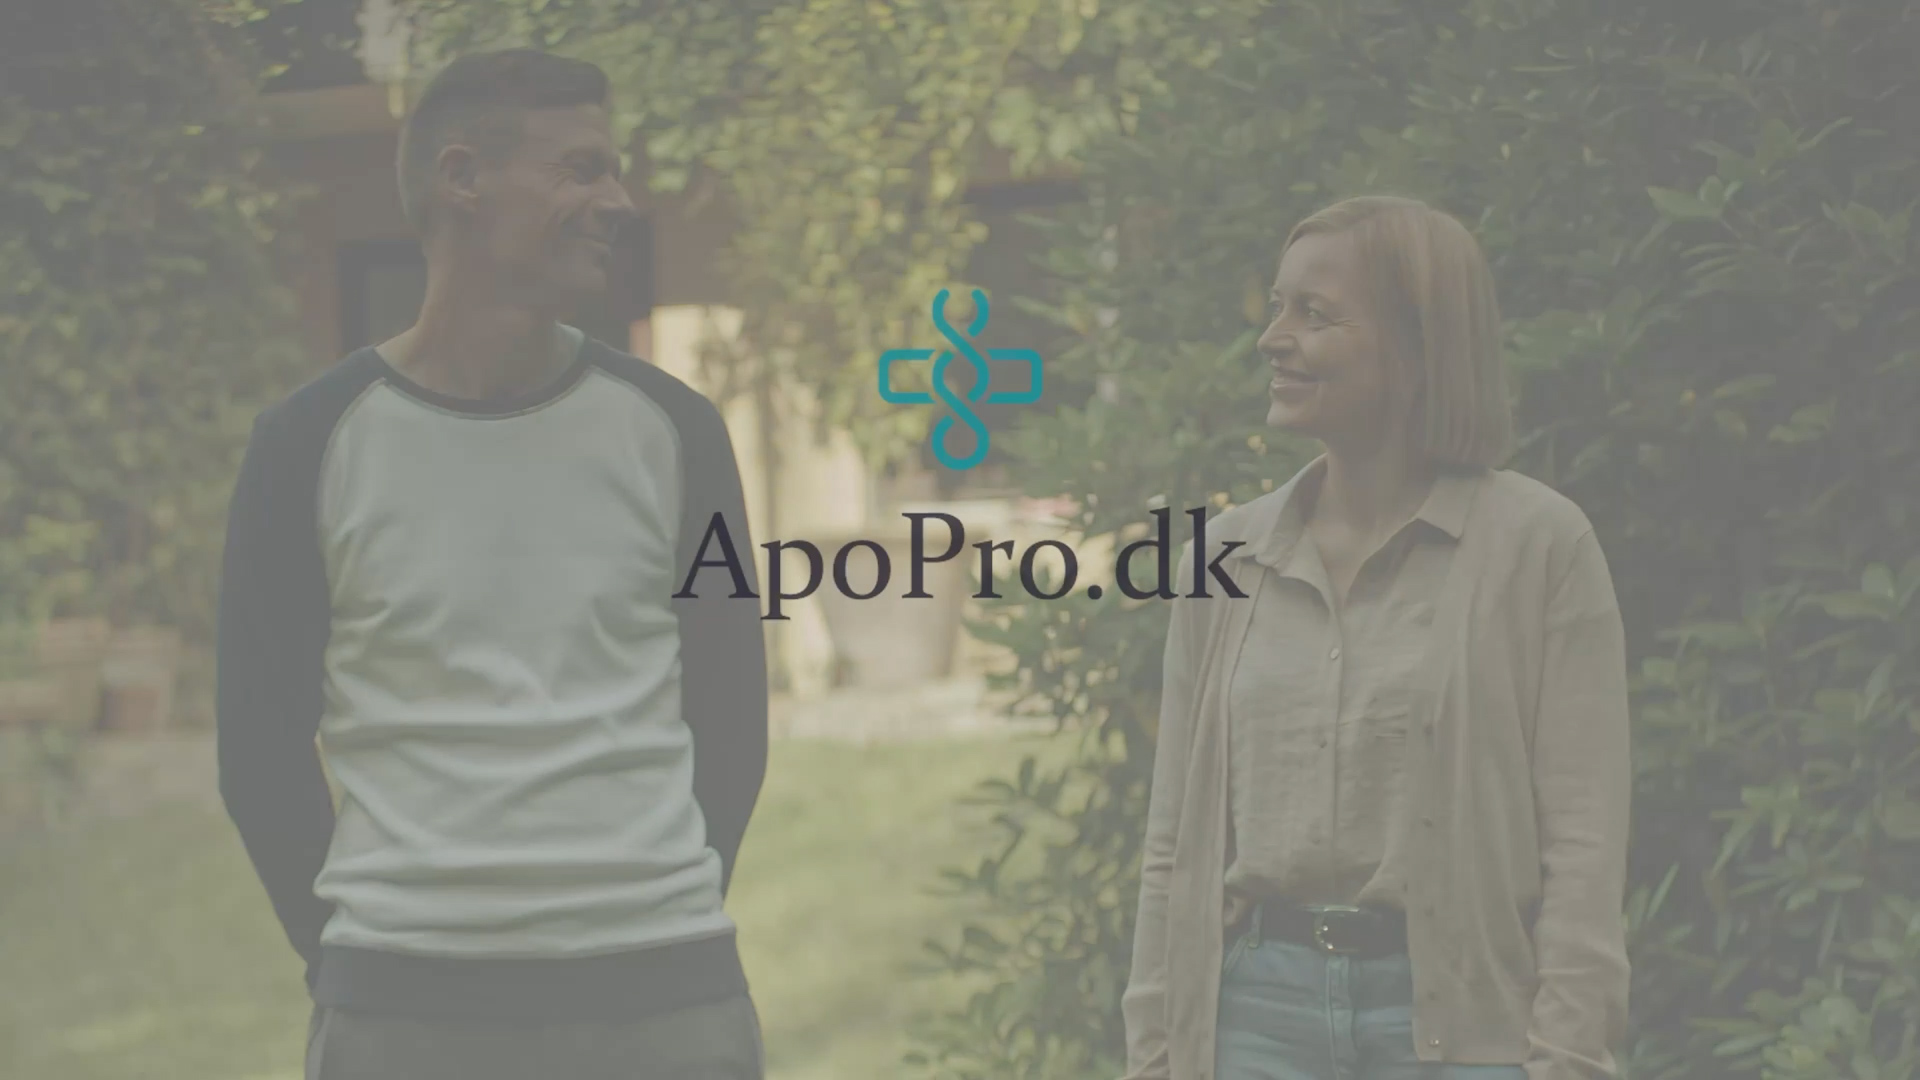 Apopro “New Nordic”